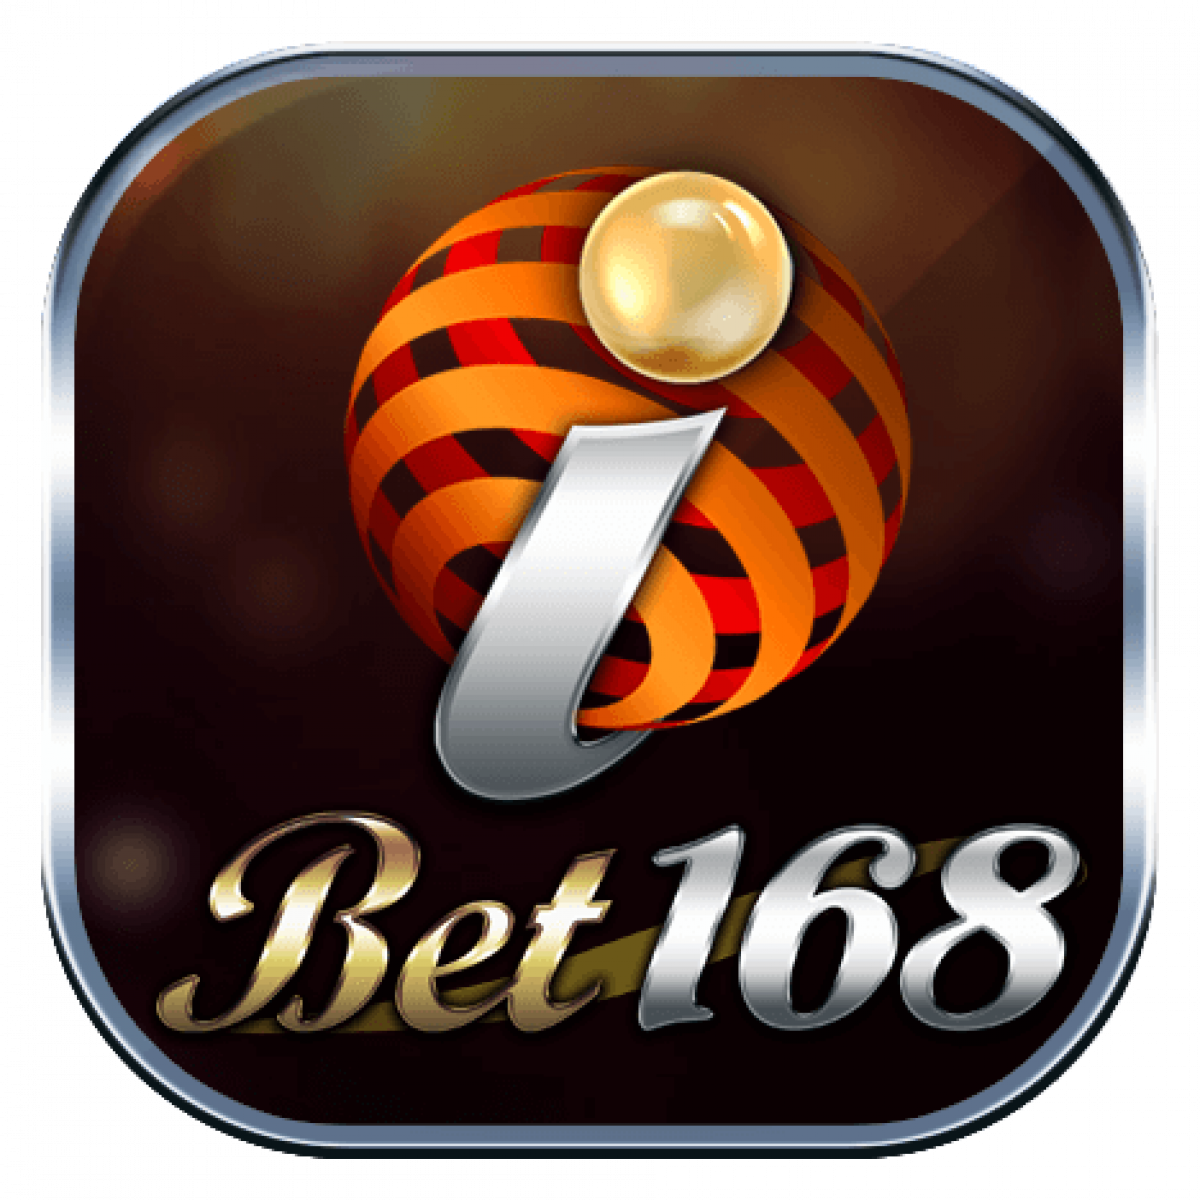 Ibet168mm Com 21 The Best Online Casino On Myanmar